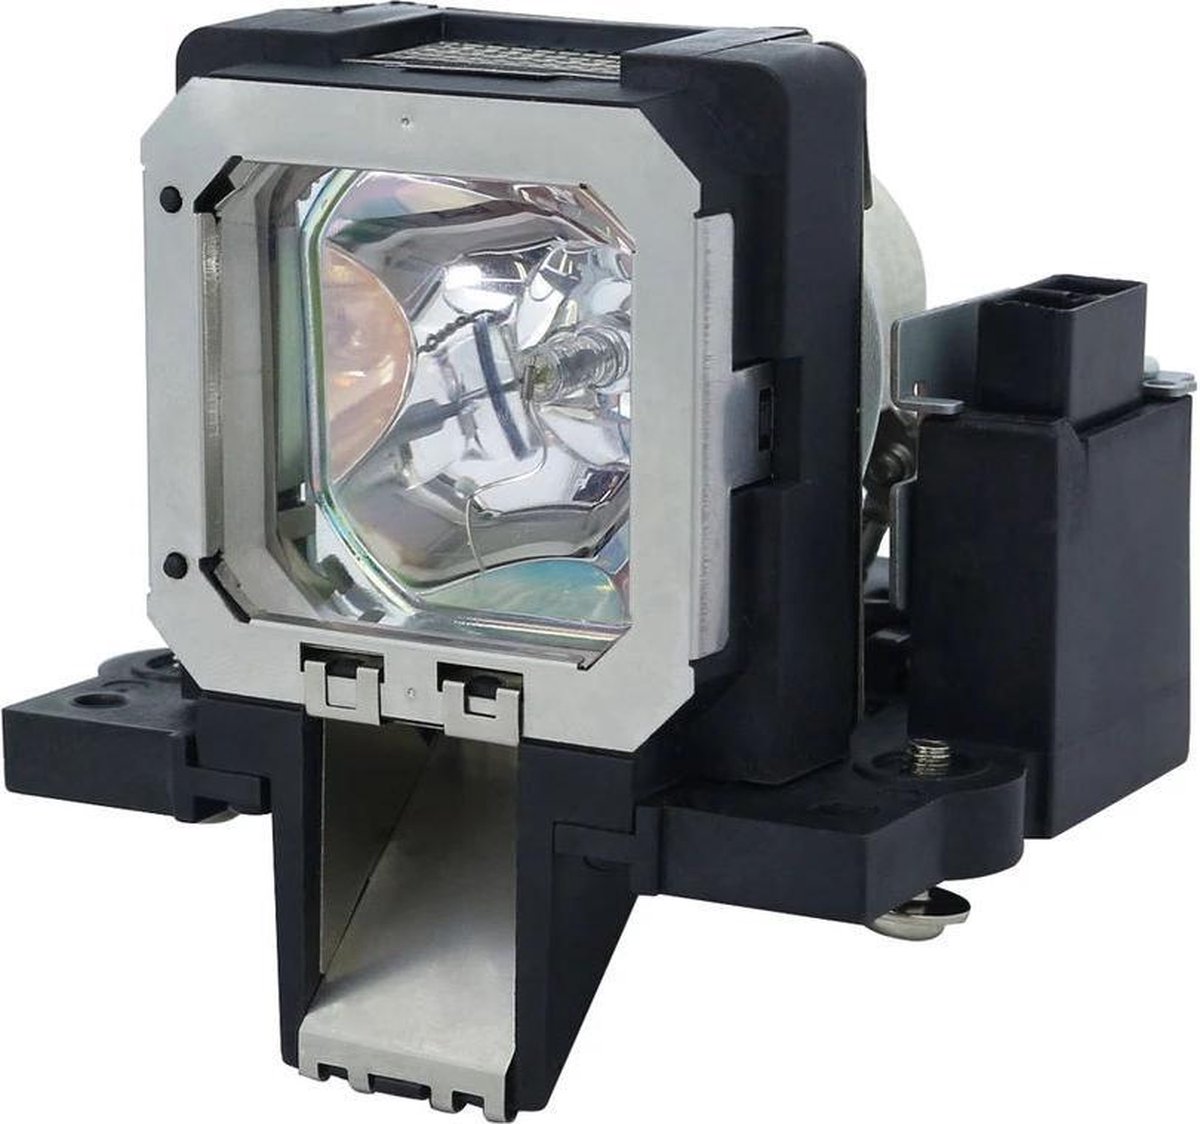 Beamerlamp geschikt voor de CINEVERSUM BLACKWING TWO MK2012 beamer, lamp code R8760003. Bevat originele NSHA lamp, prestaties gelijk aan origineel.